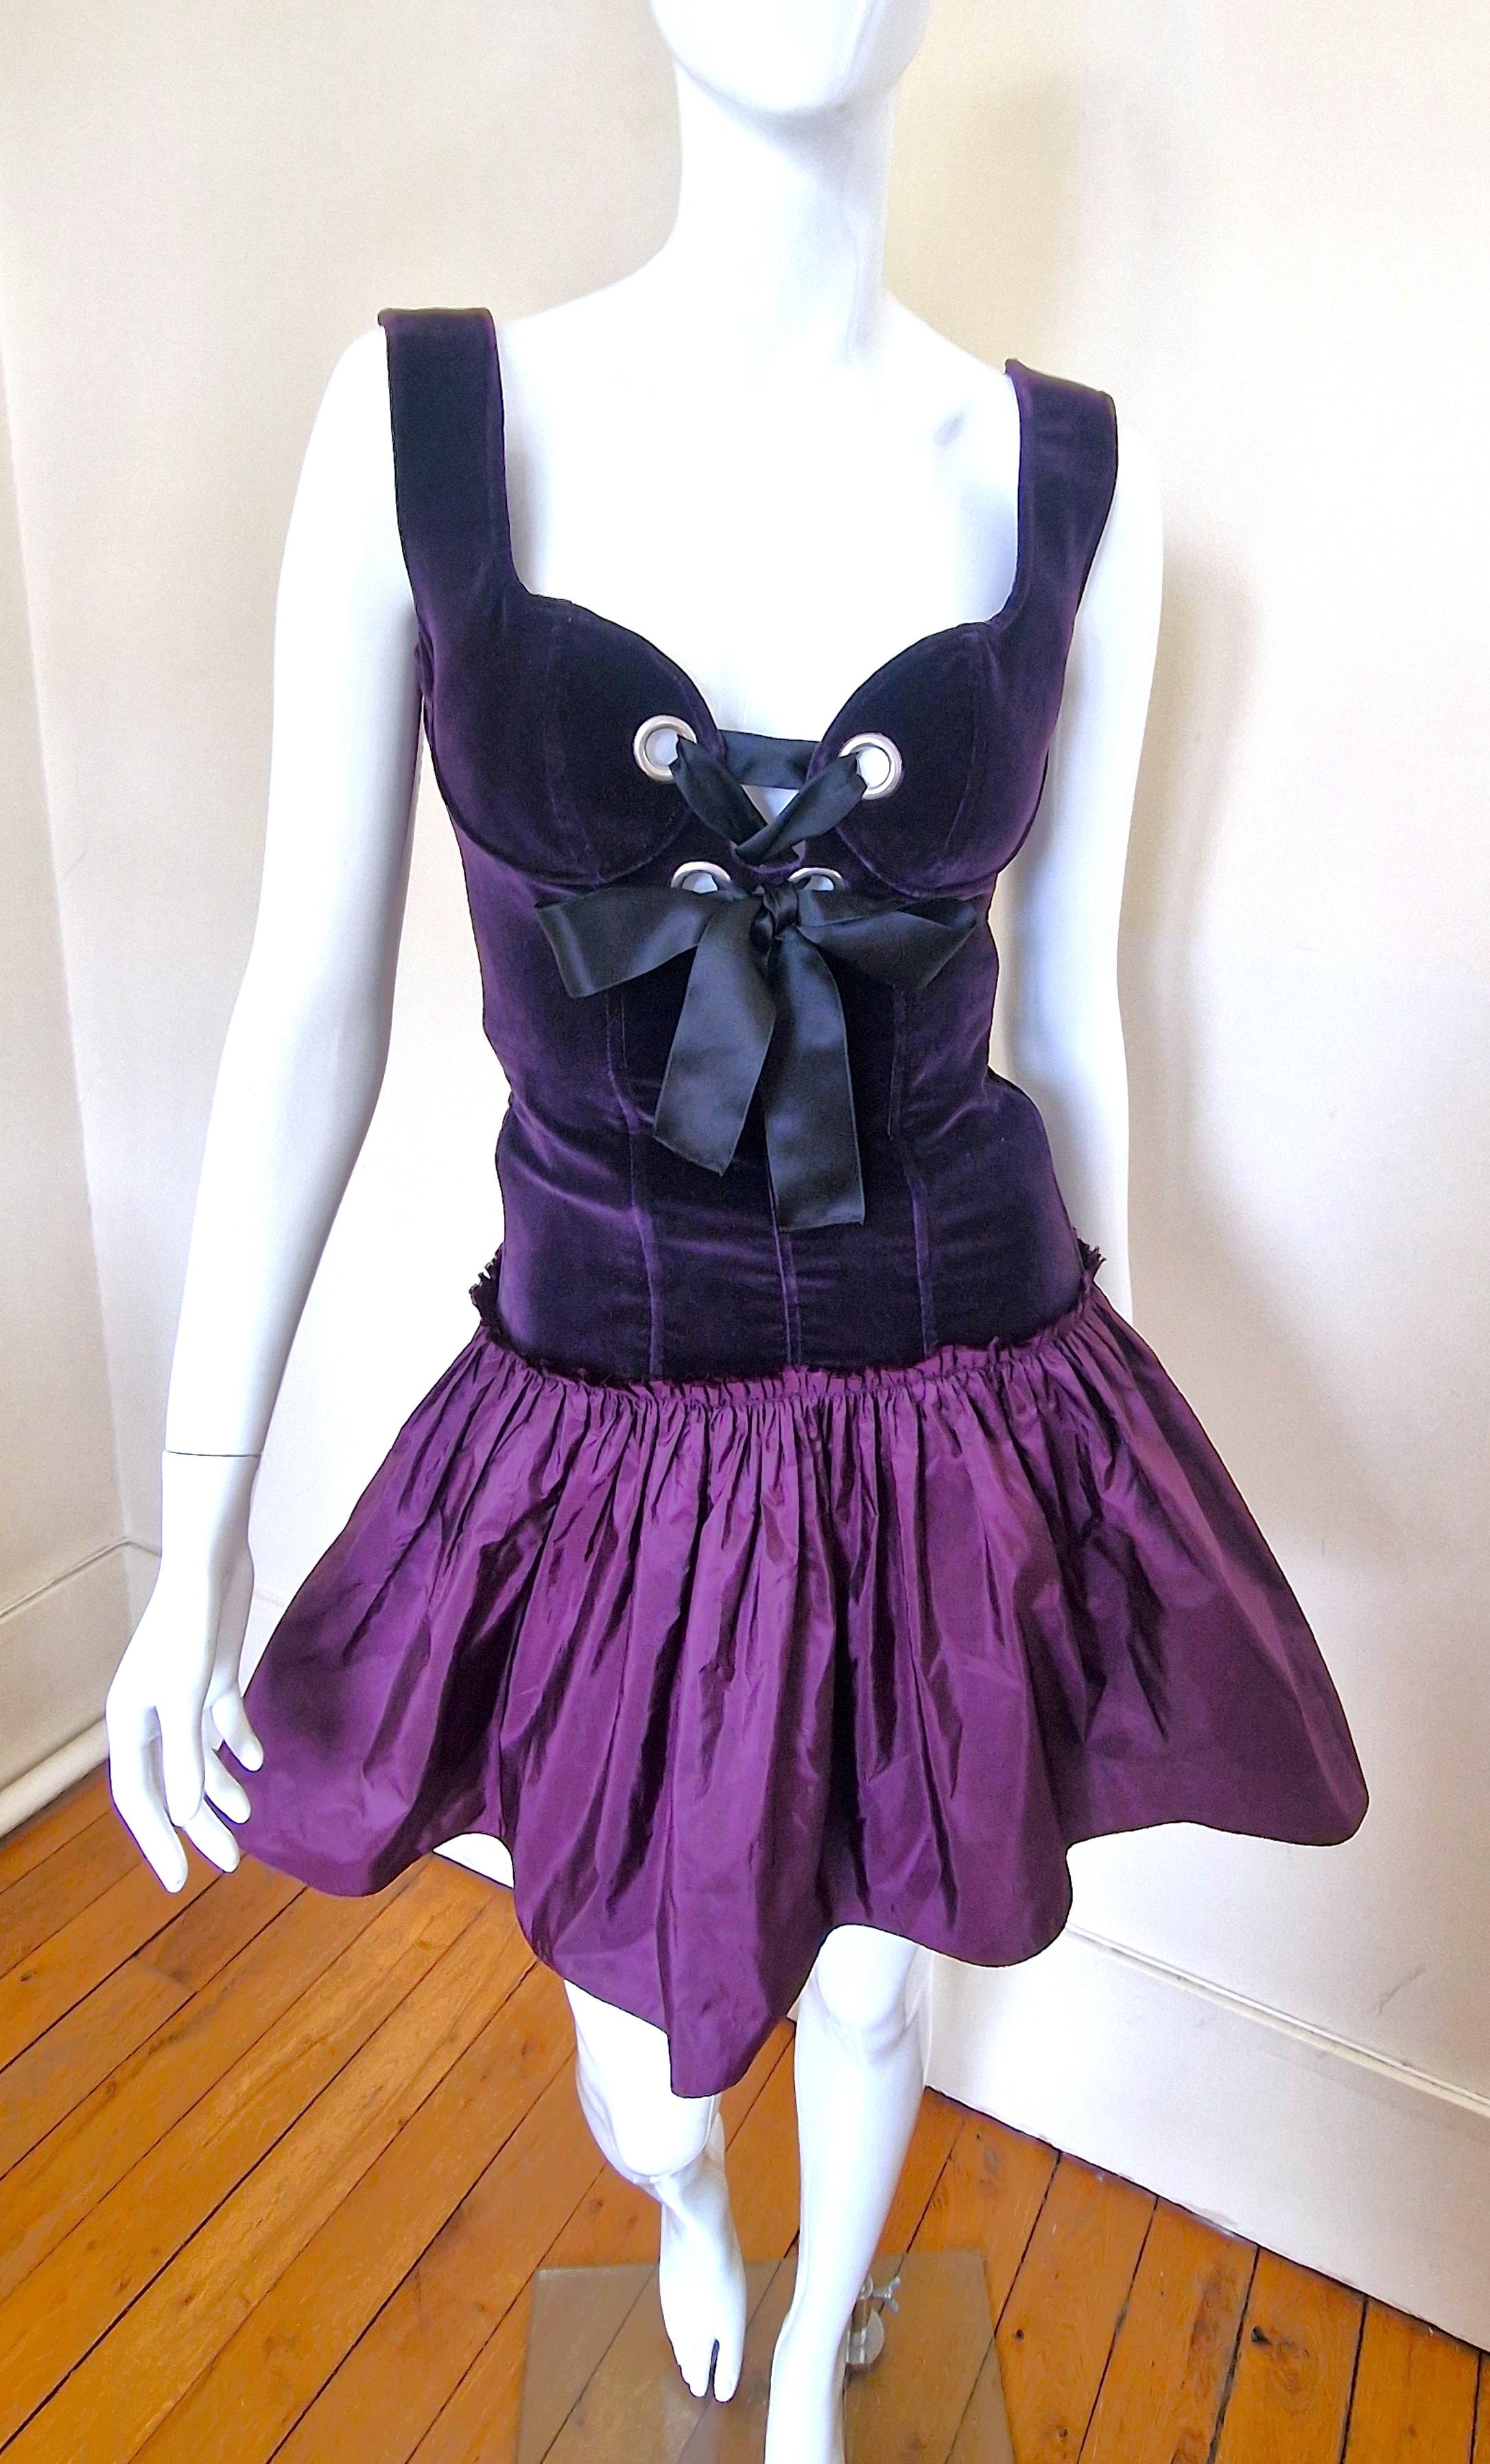 Alexander McQueen Corset Bustier Lace Up Tutu Petticoat Violet Medium Gown Dress For Sale 8